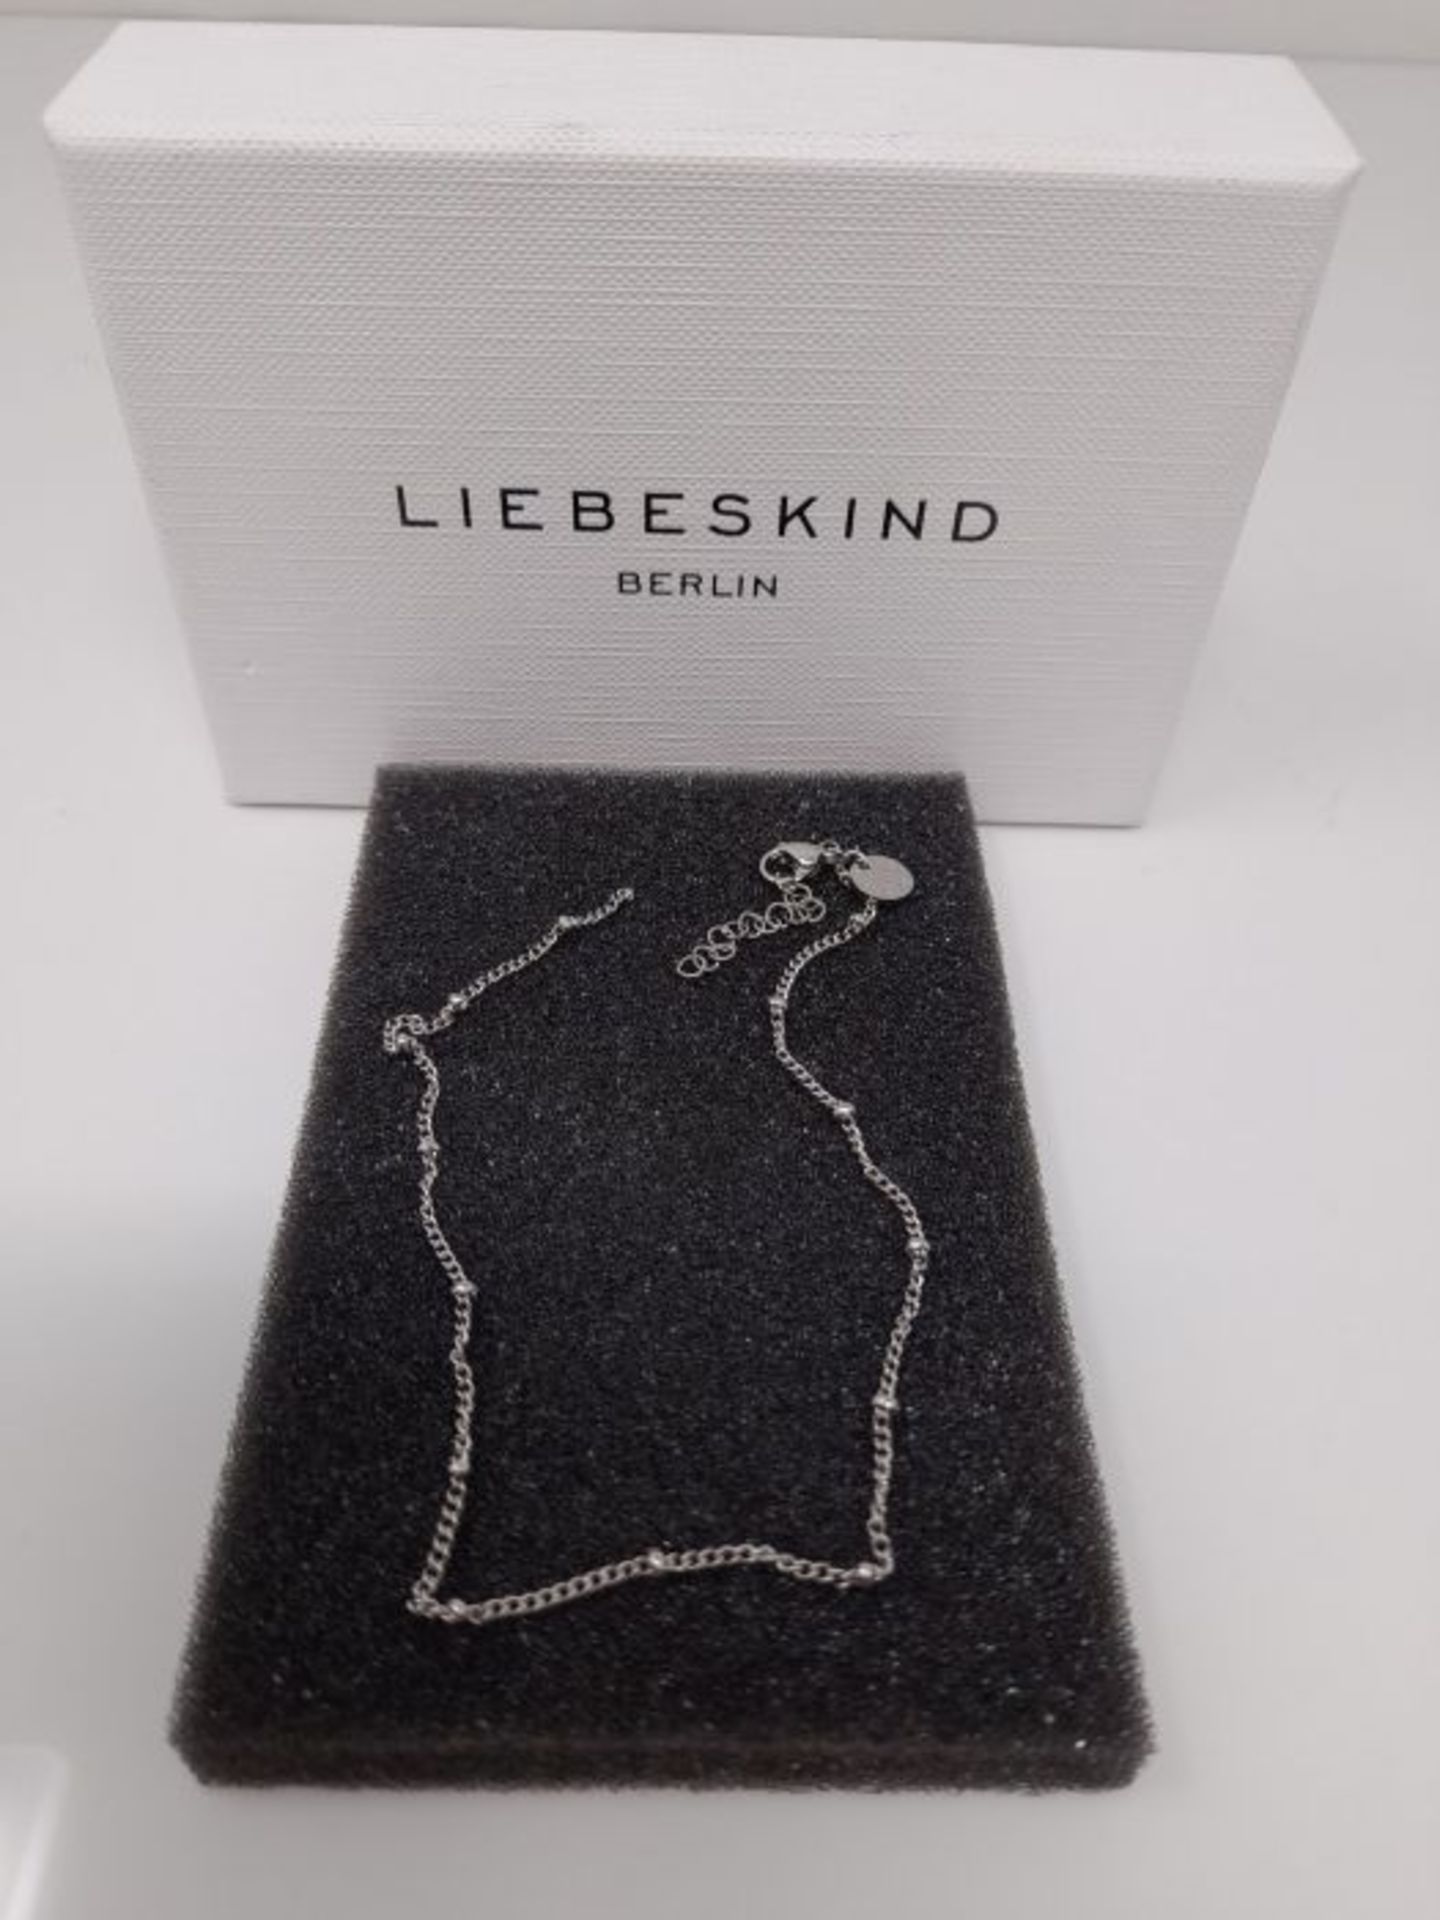 [CRACKED] Liebeskind Berlin filigranes Anklet mit Logoanhänger aus Edelstahl LJ-0588- - Image 2 of 2